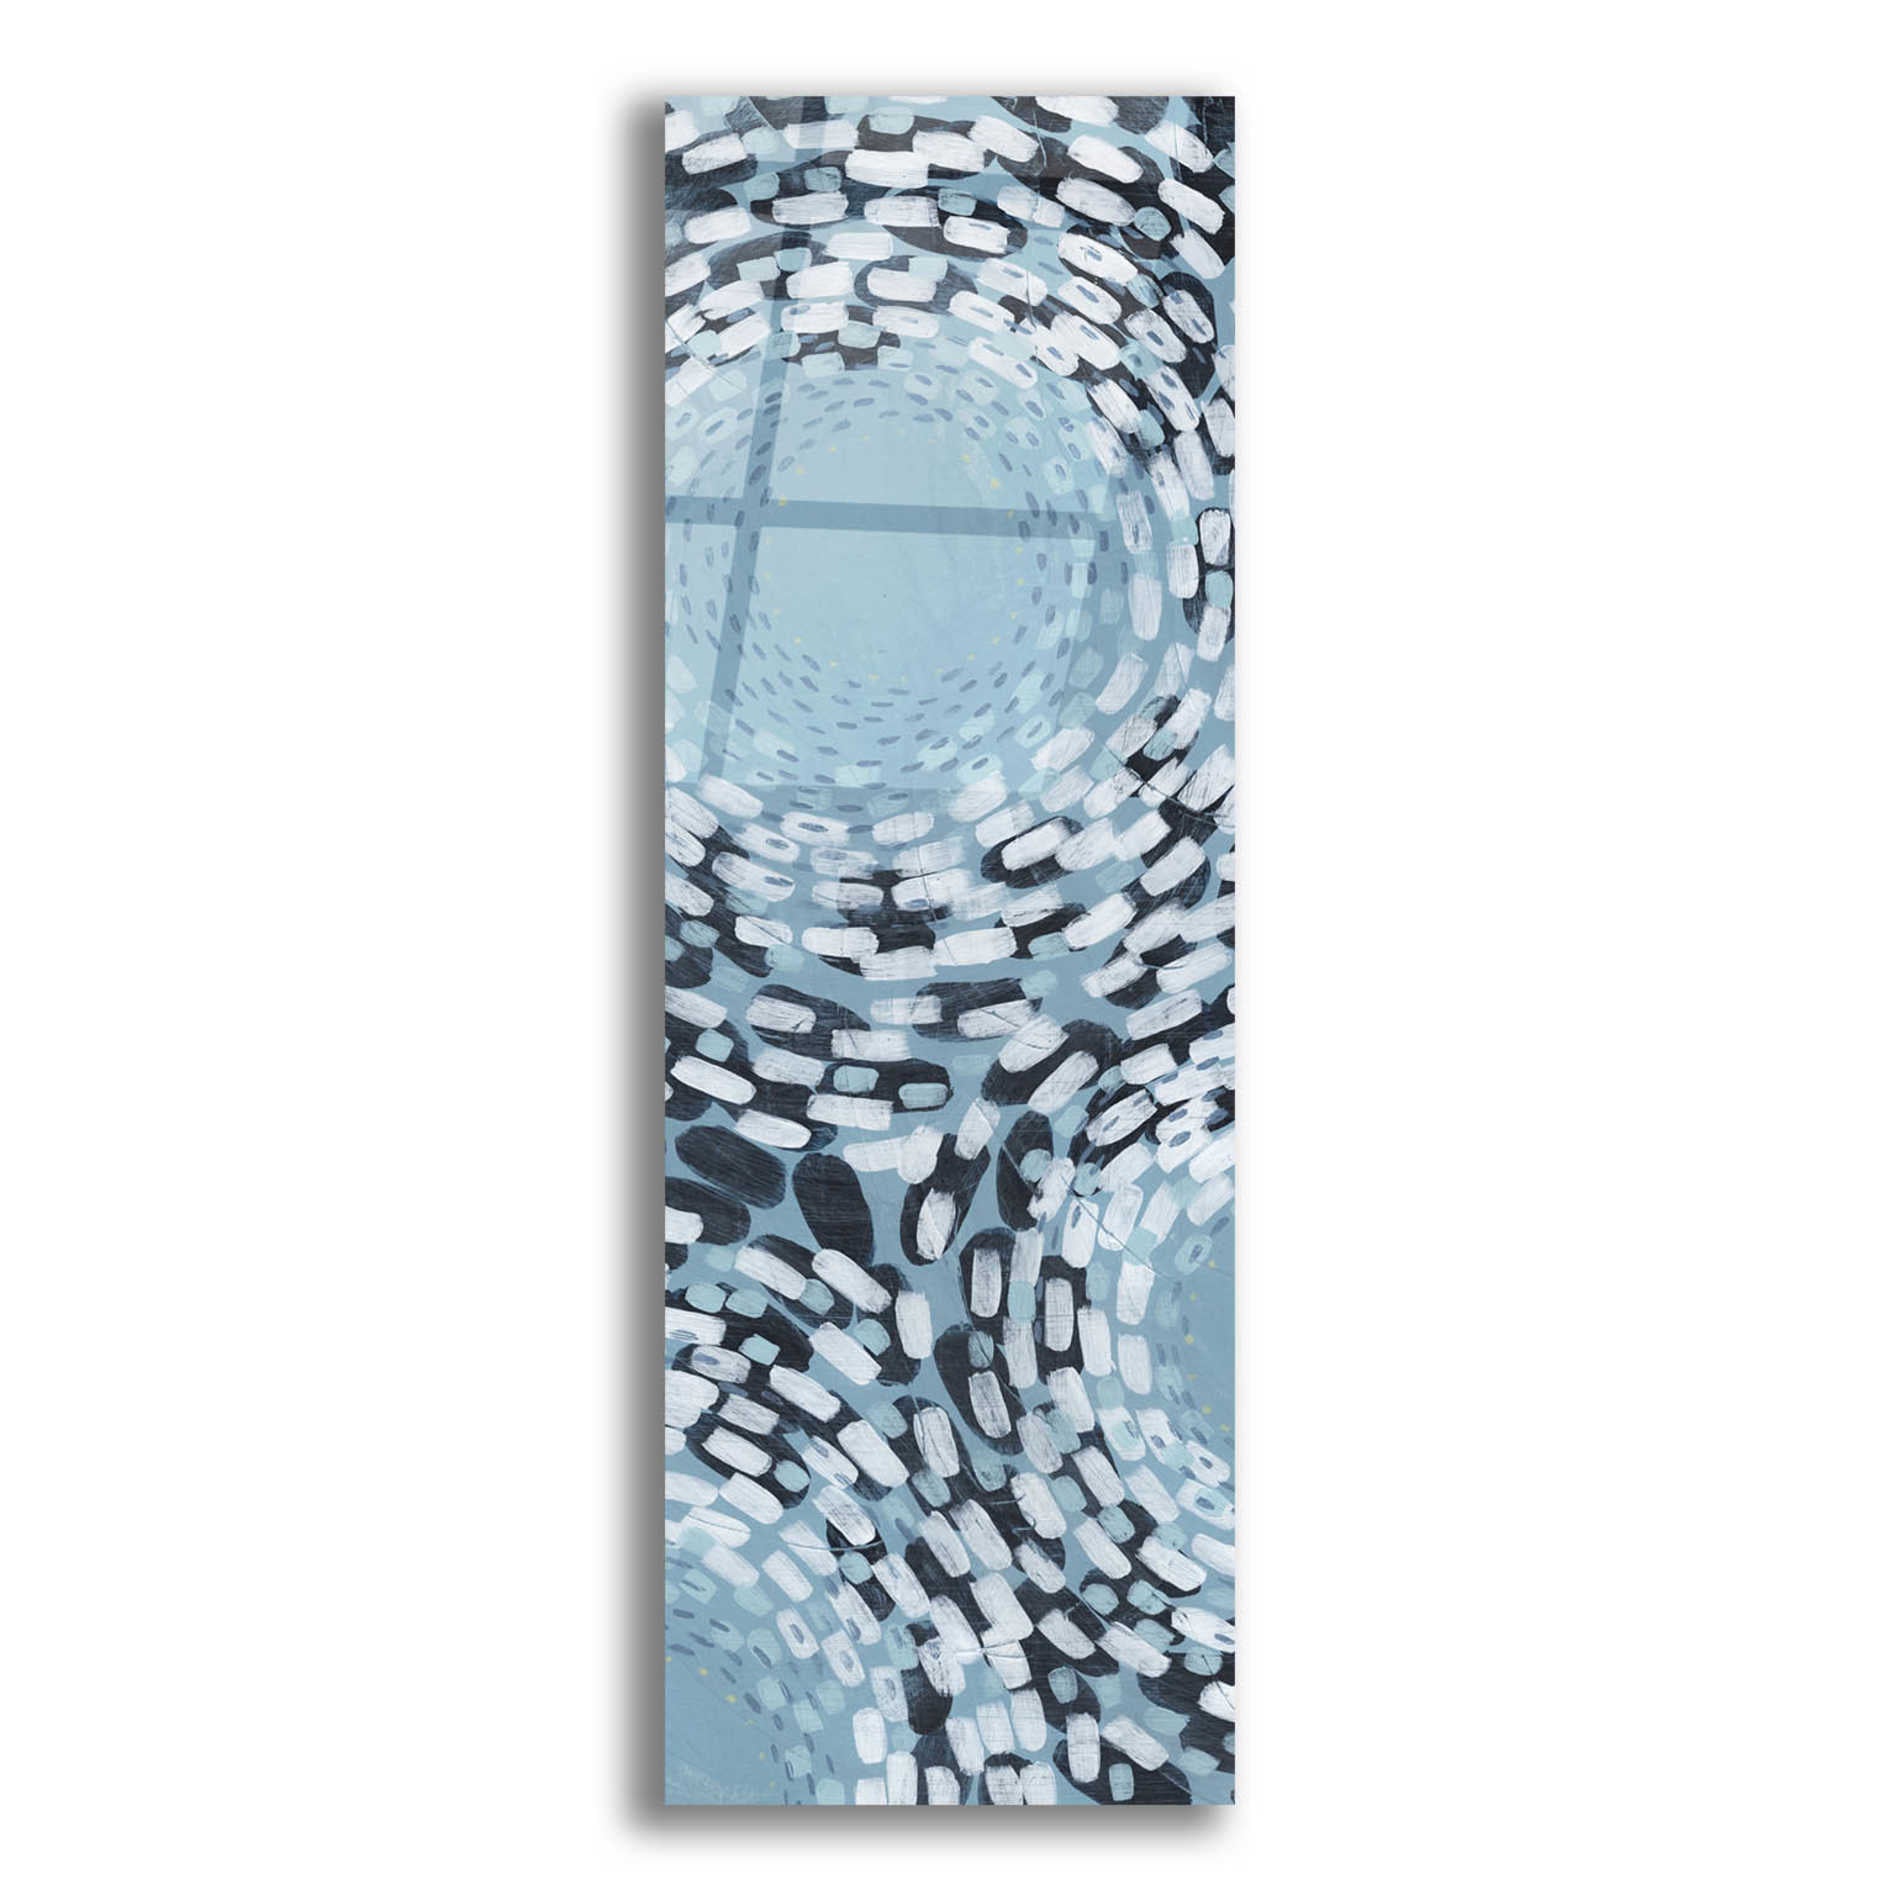 Epic Art 'Whirlpool II' by Grace Popp,Acrylic Glass Wall Art